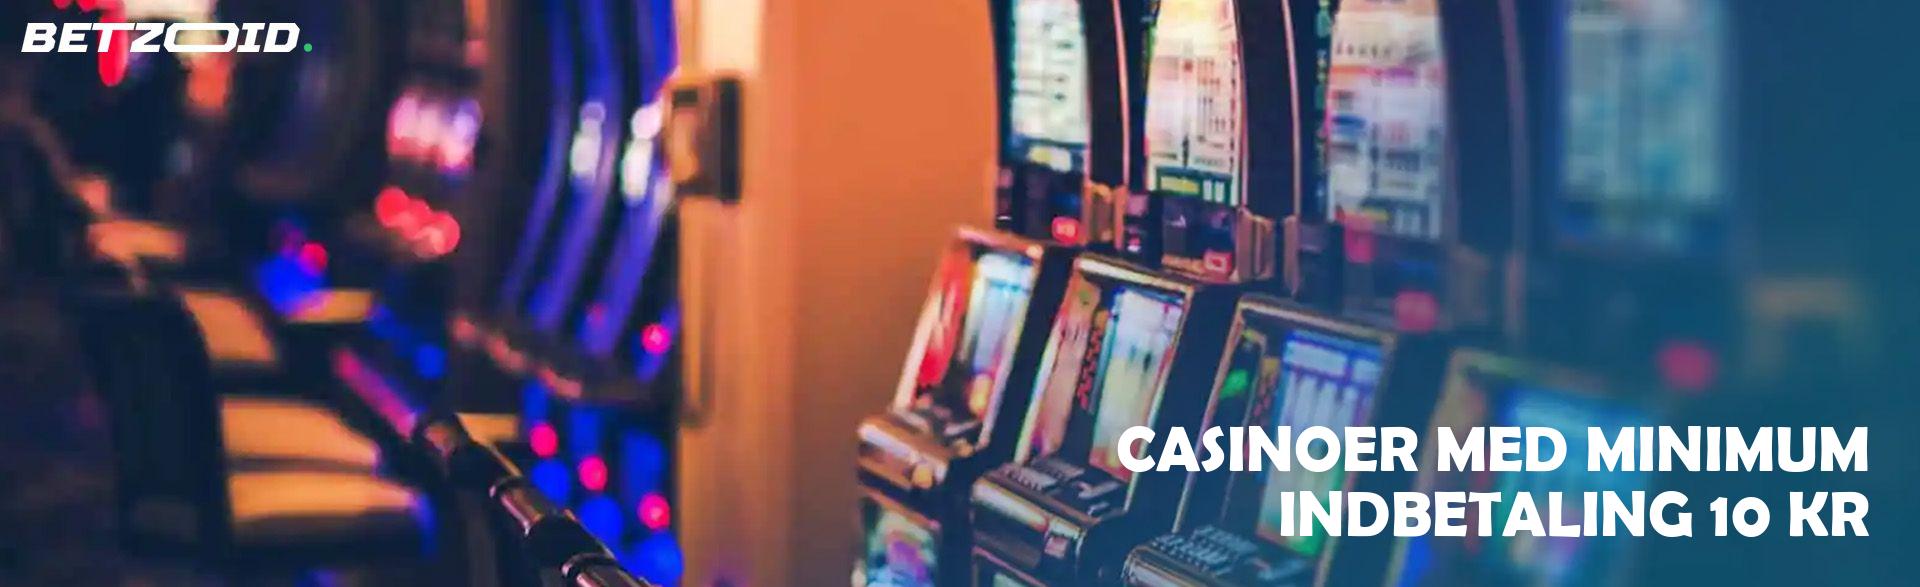 Casinoer Med Minimum Indbetaling 10 Kr.